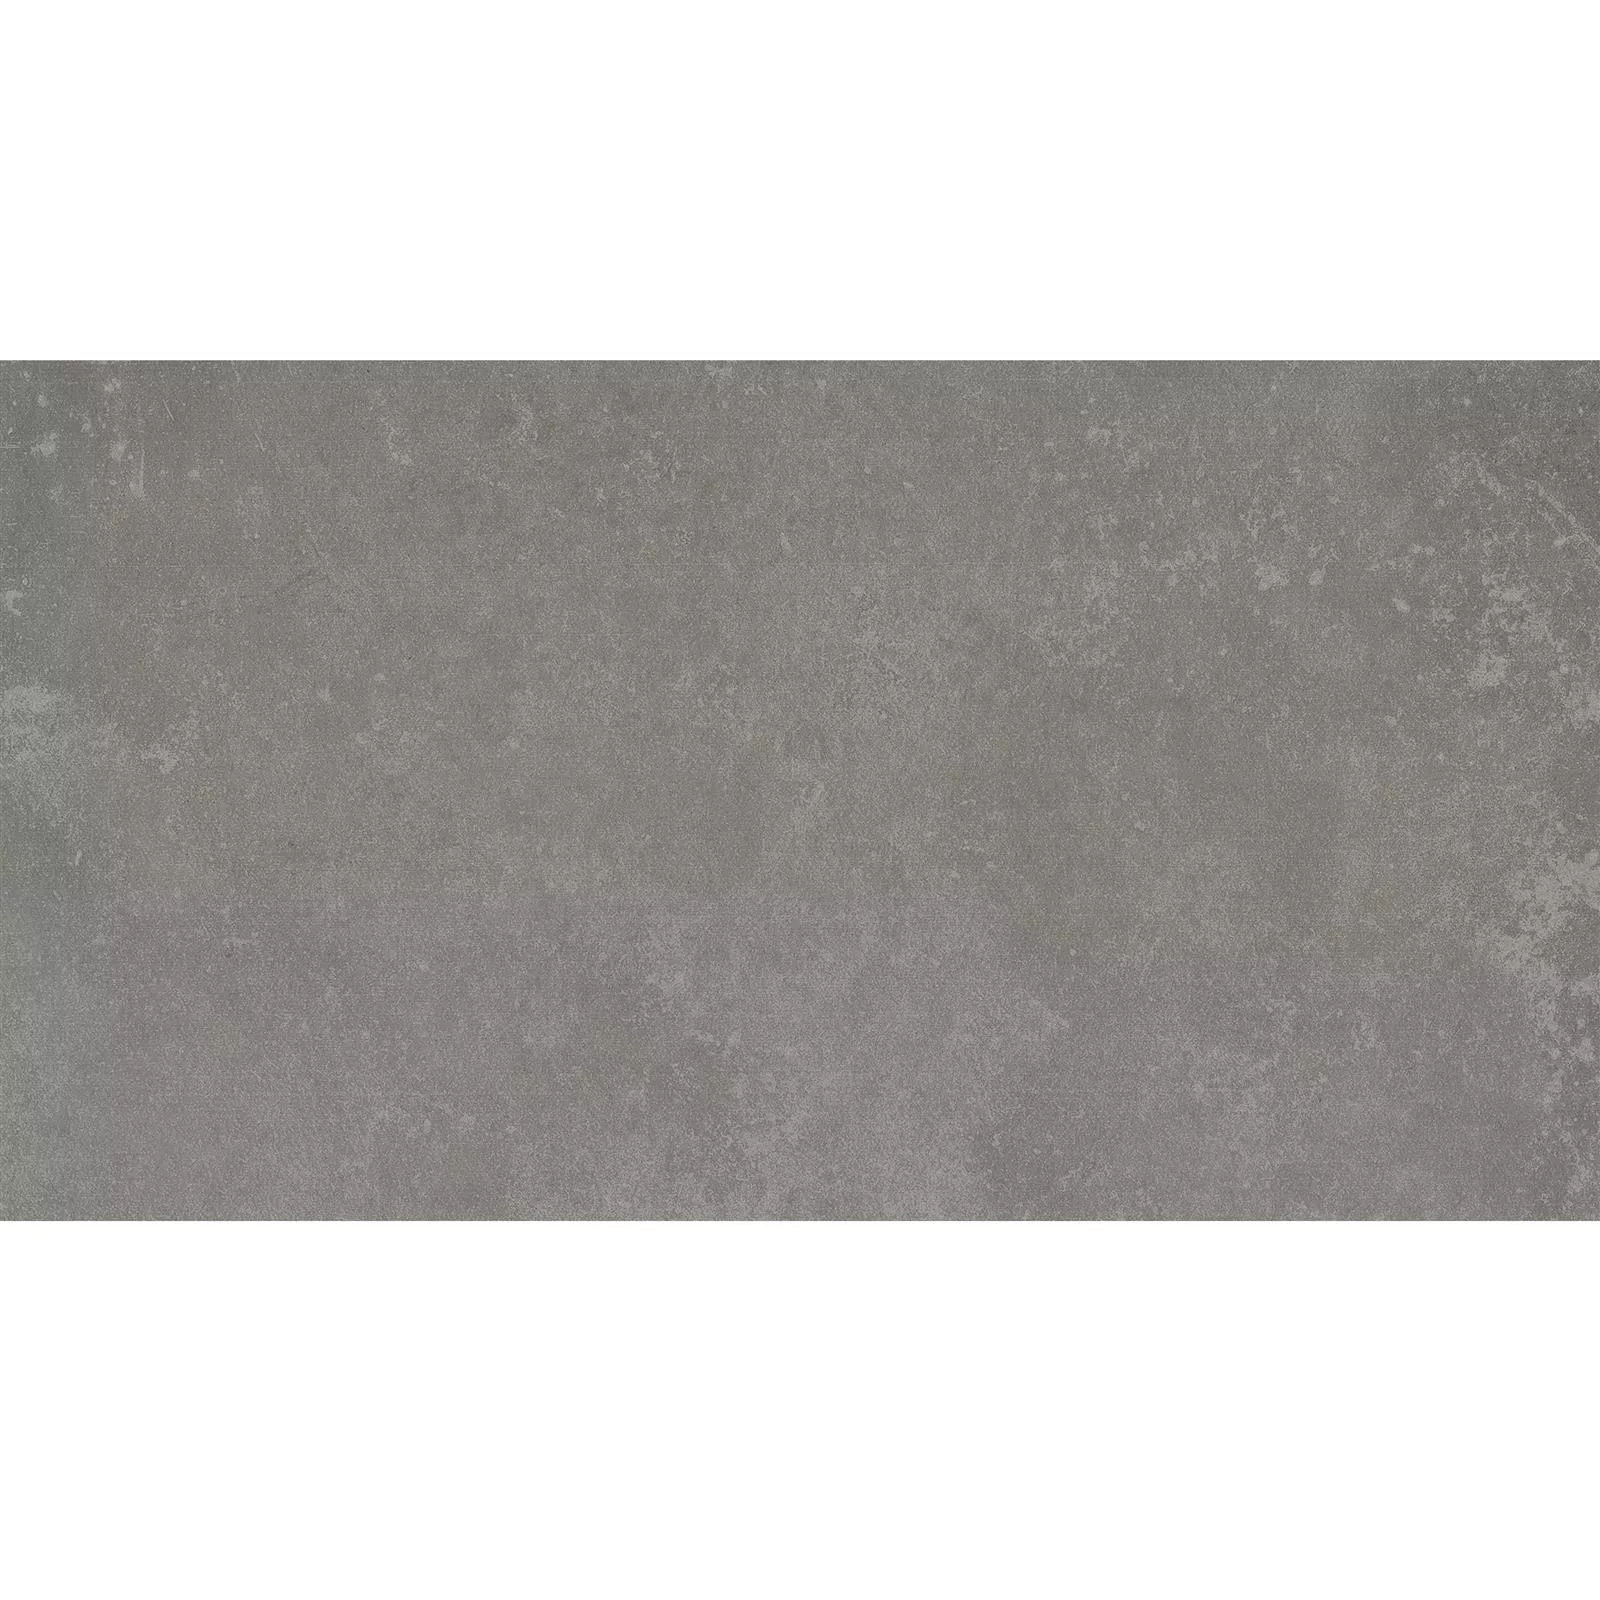 Πλακάκια Δαπέδου Nepal Γκρί Μπεζ 30x60x0,7cm